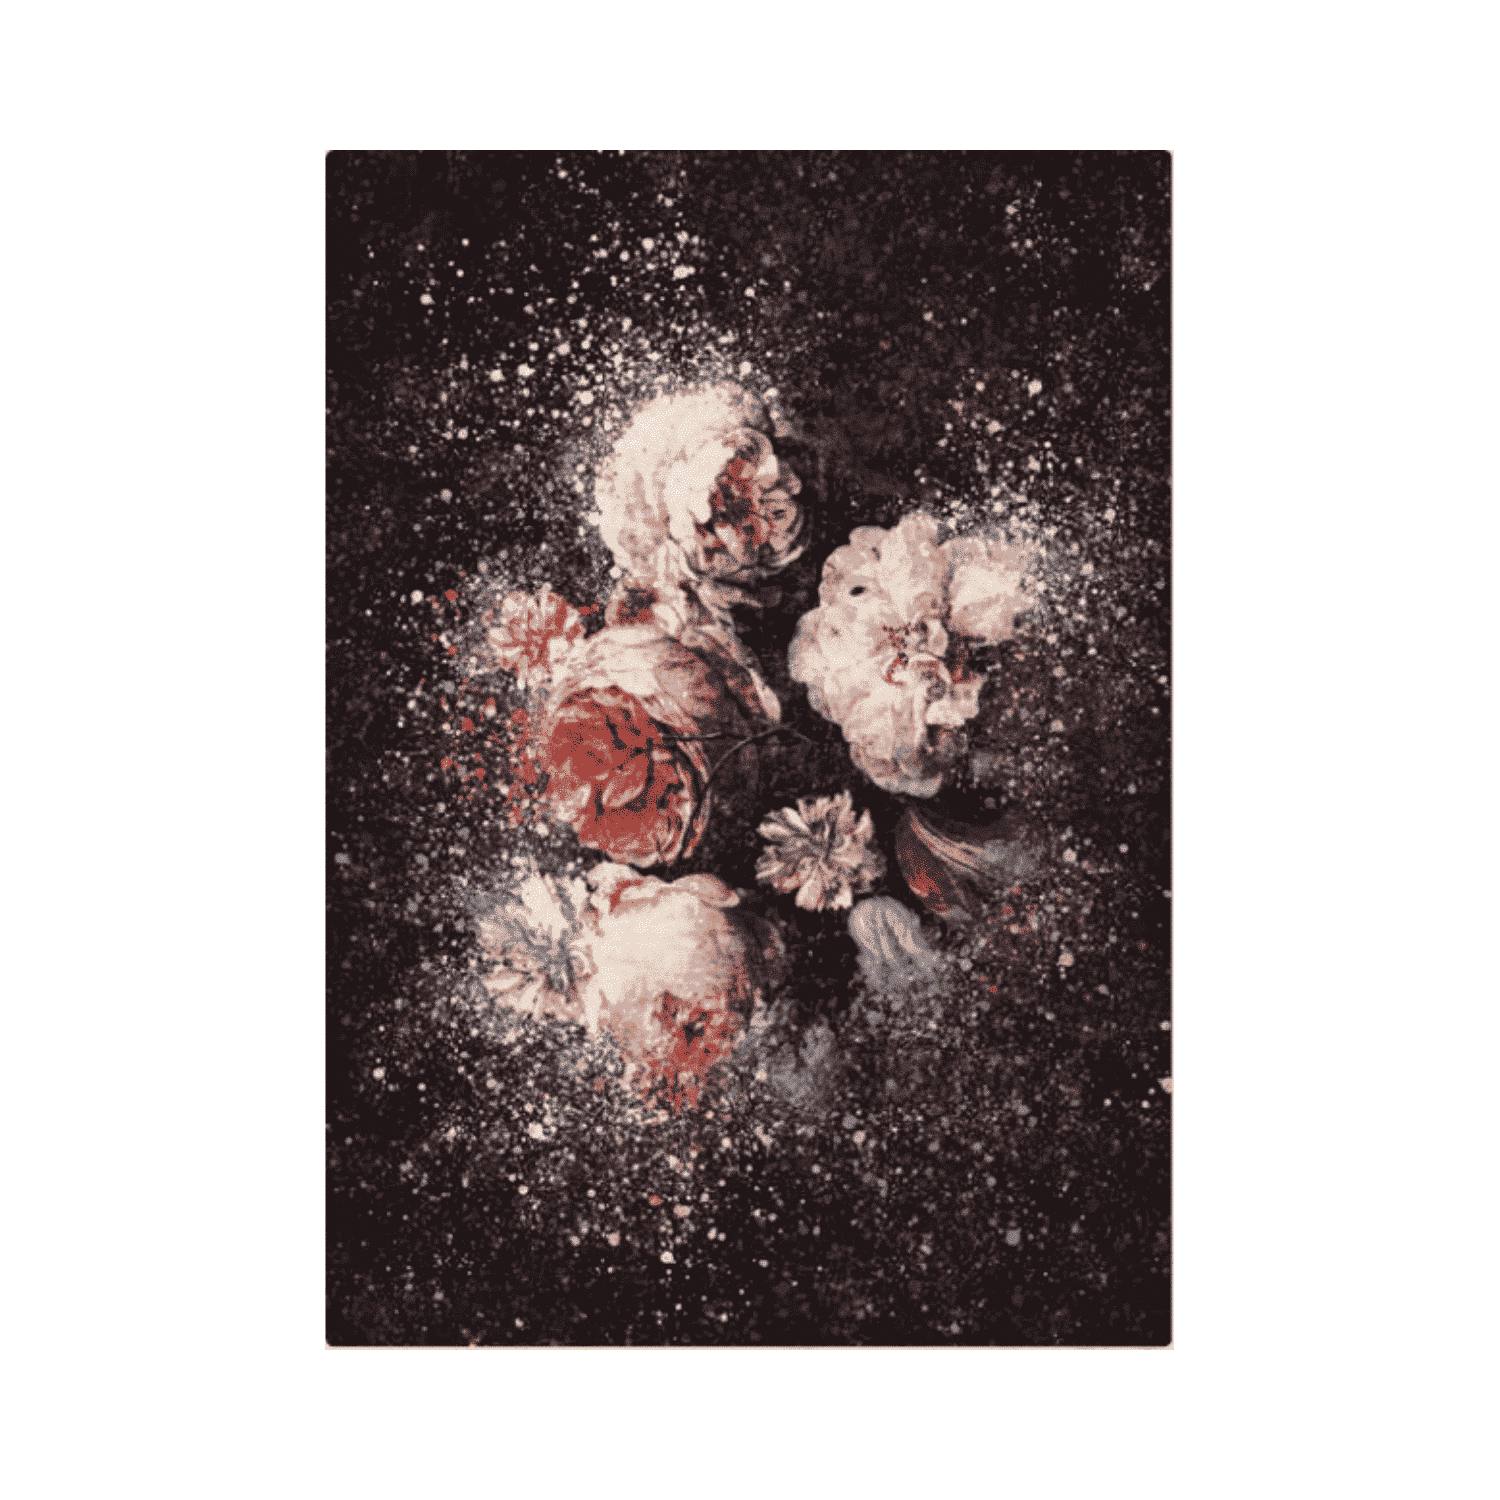 flaubert-tappeto-arredo-emozioni-artista-bouquet-multicolor-fiorato-scuro-esplosivo-front